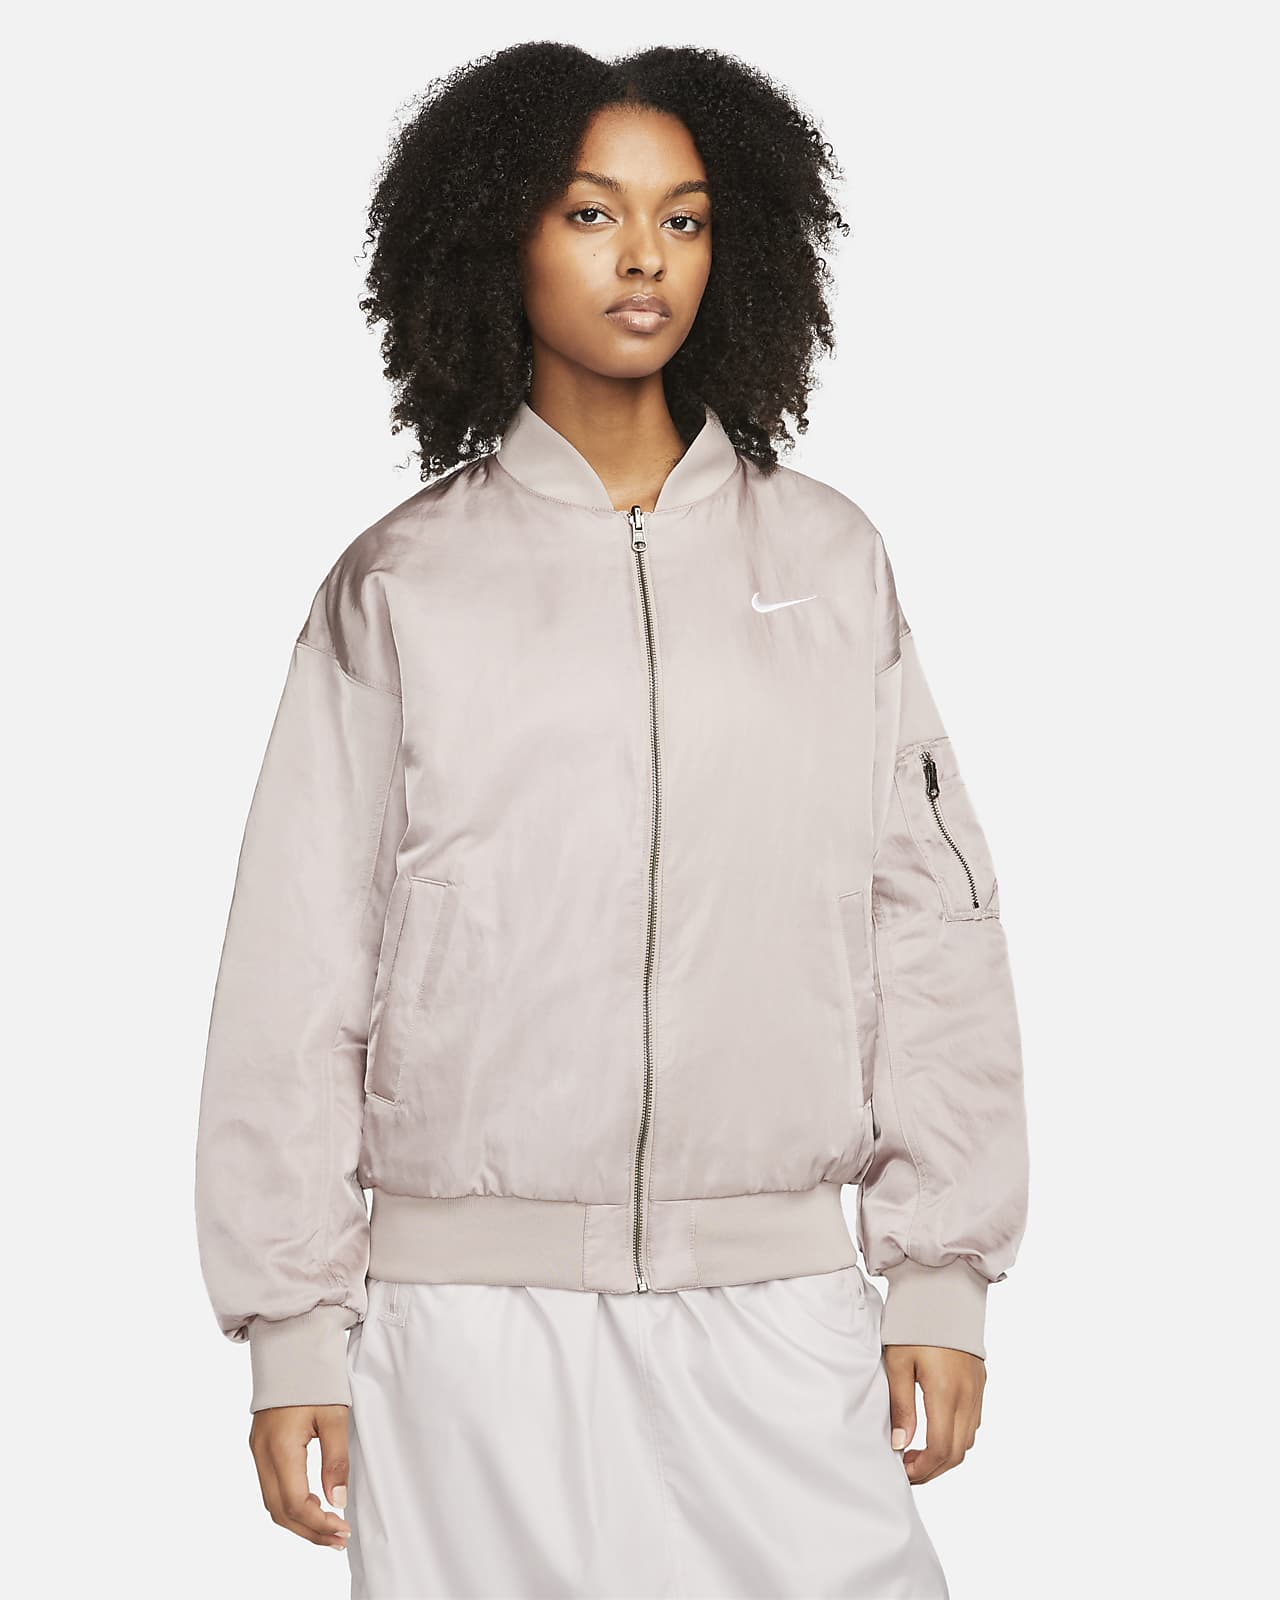 Nike Sportswear Women's Reversible Varsity Bomber Jacket